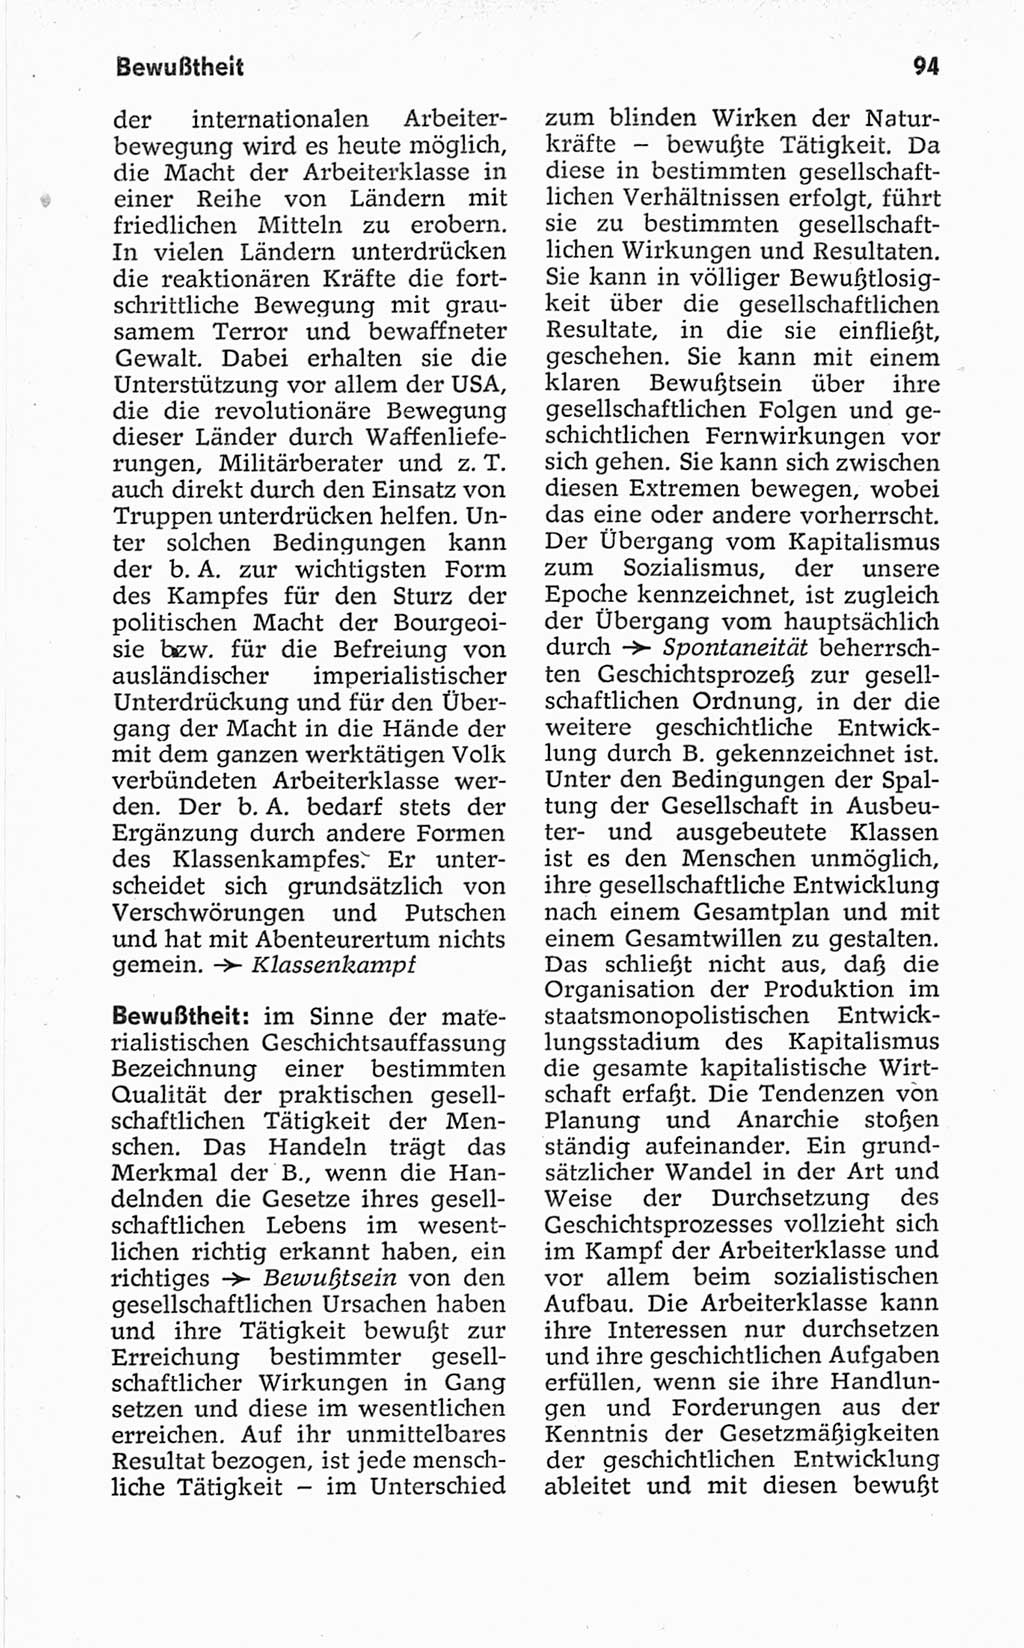 Kleines politisches Wörterbuch [Deutsche Demokratische Republik (DDR)] 1967, Seite 94 (Kl. pol. Wb. DDR 1967, S. 94)